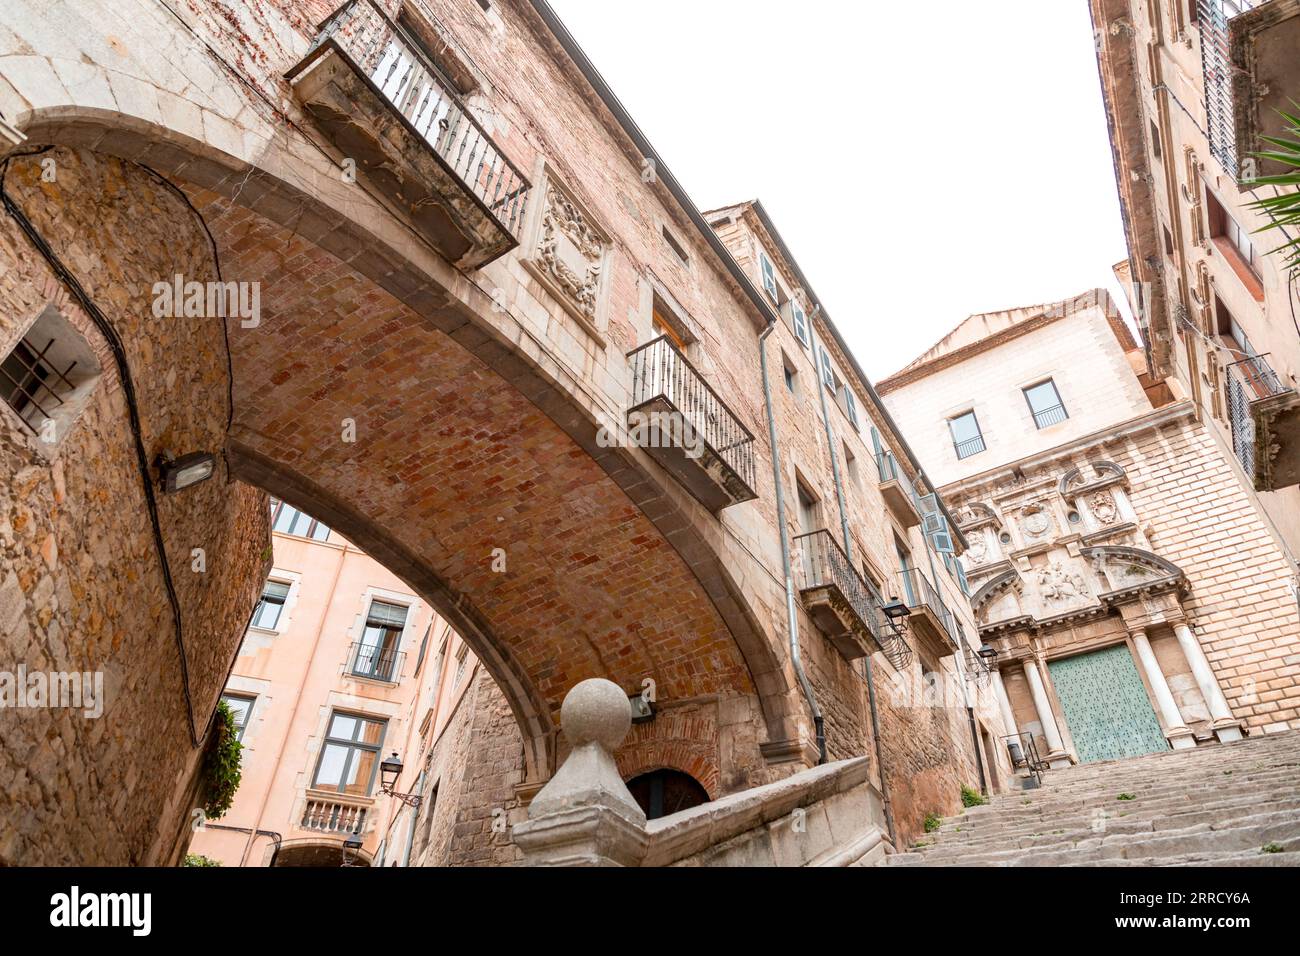 Bellissimi gradini e arco della Pujada de Sant Domenec, situata nel quartiere ebraico di Girona, Catalogna, Spagna. Foto Stock